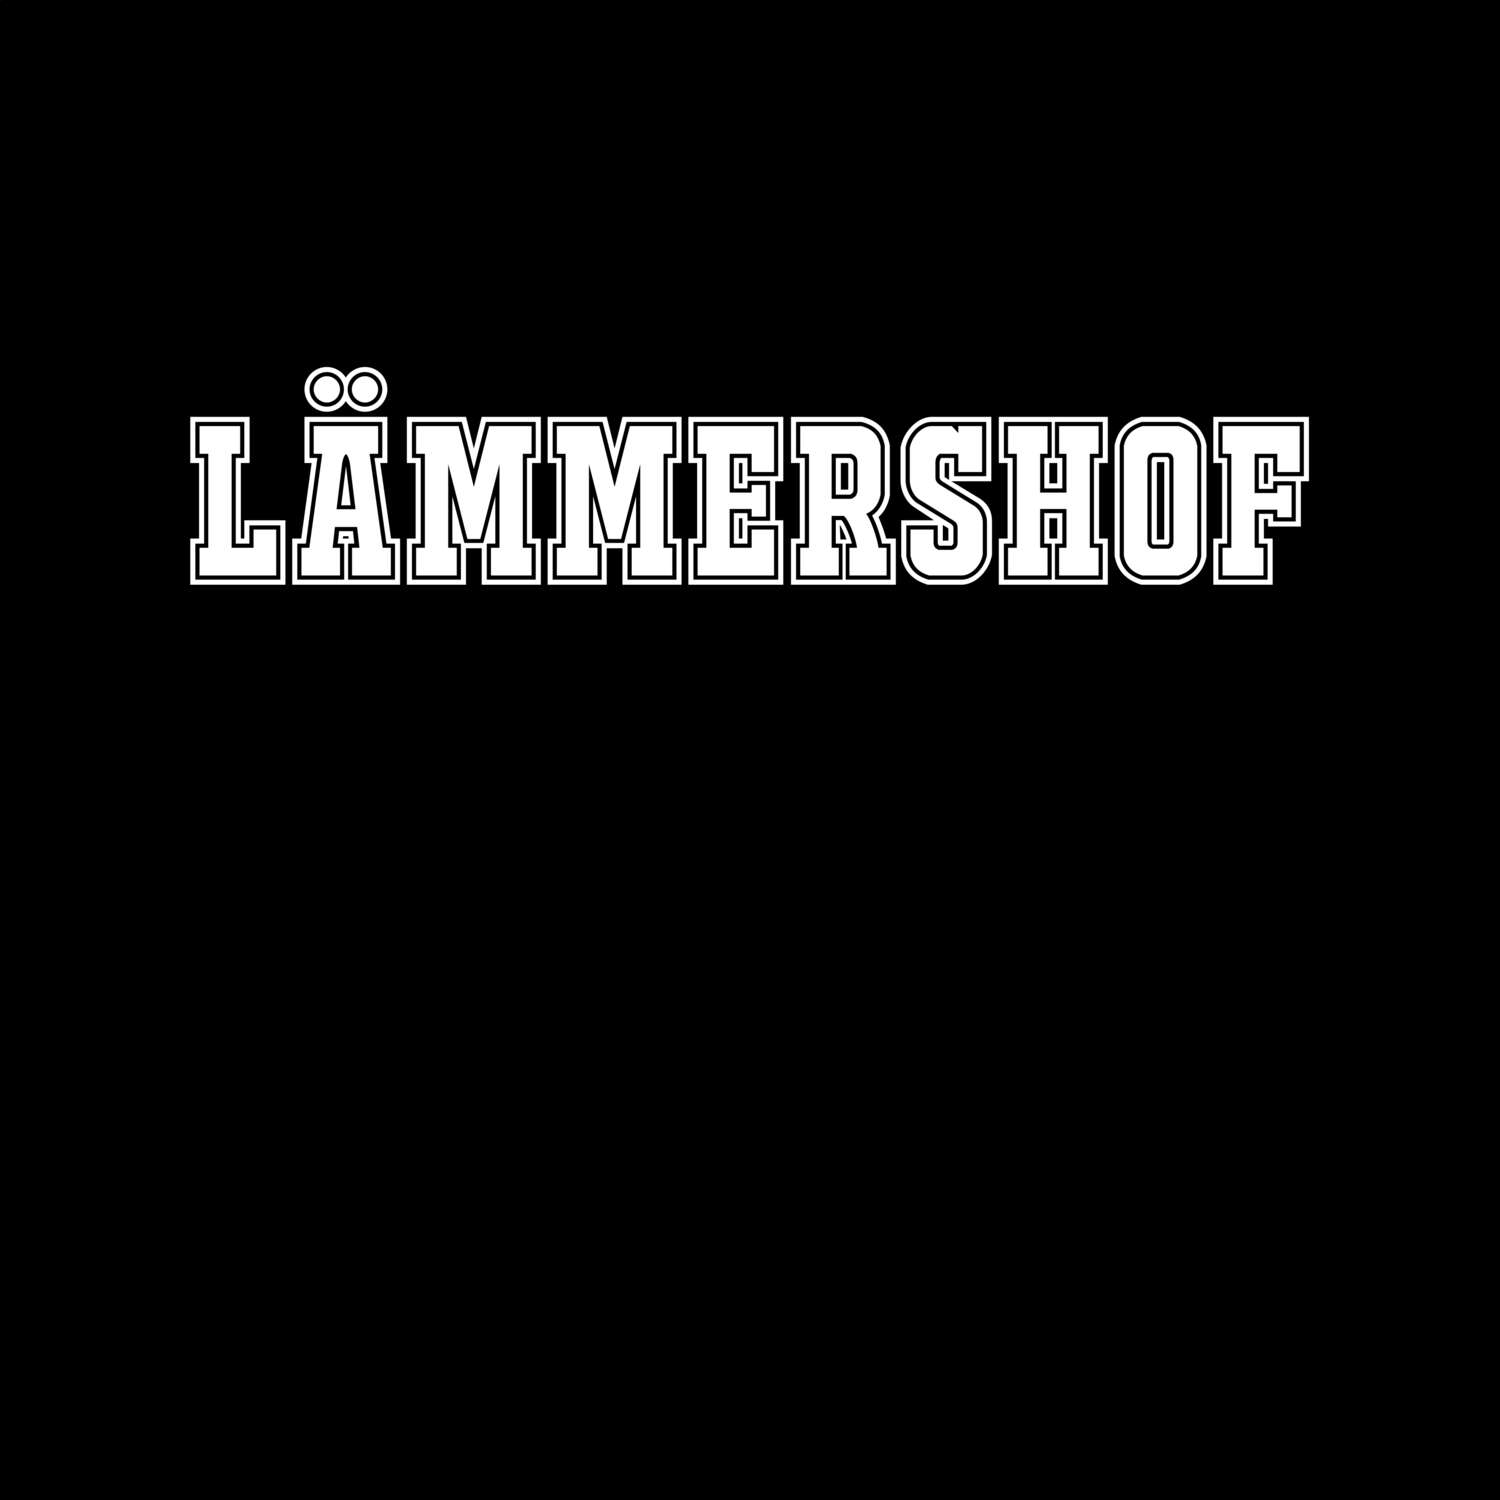 Lämmershof T-Shirt »Classic«